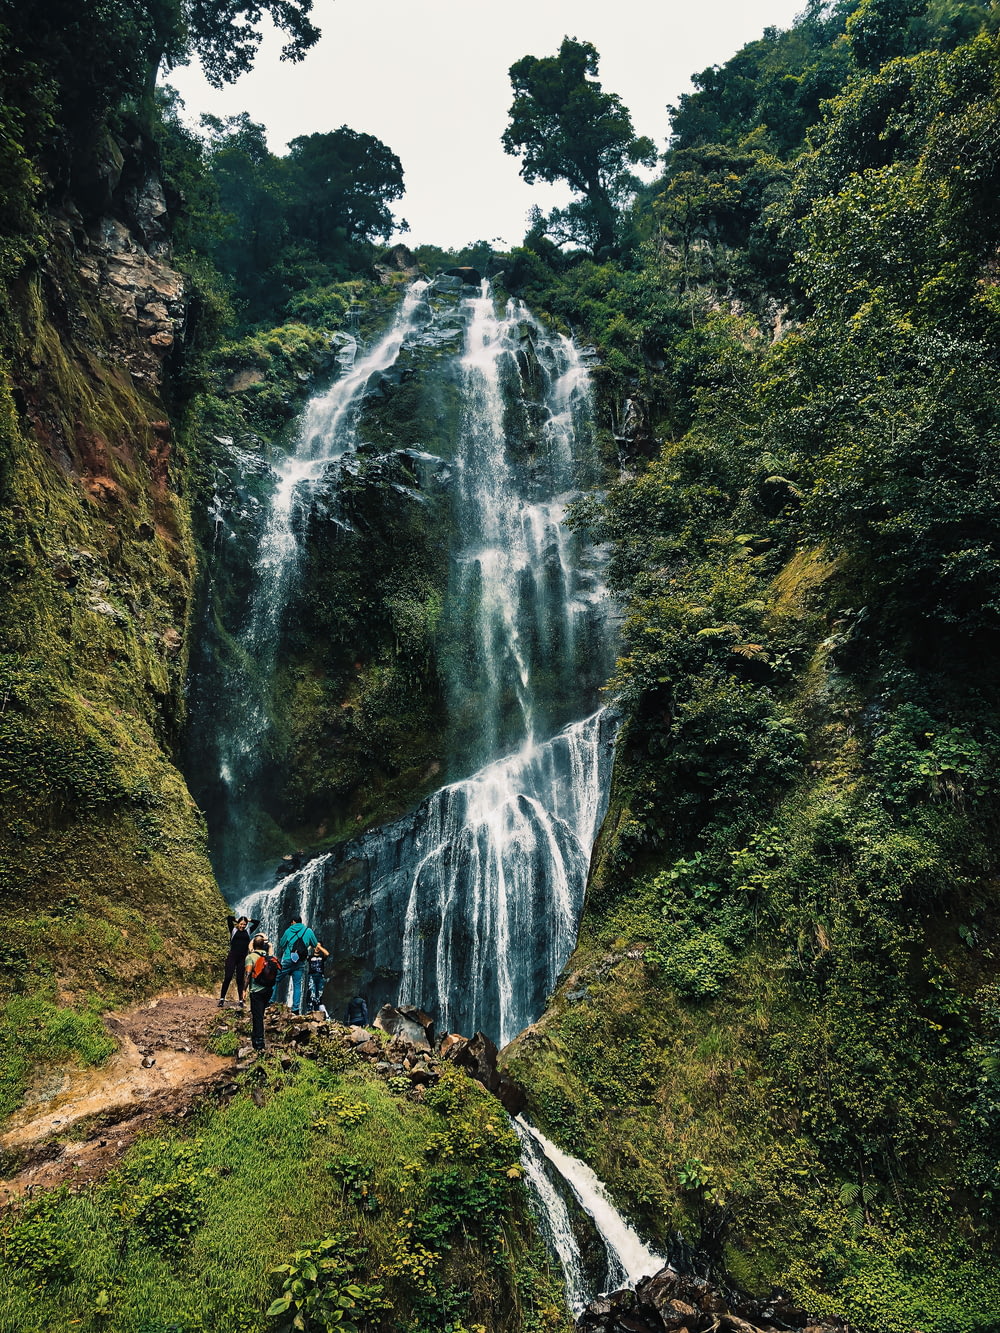 people walking on pathway near waterfalls during daytime